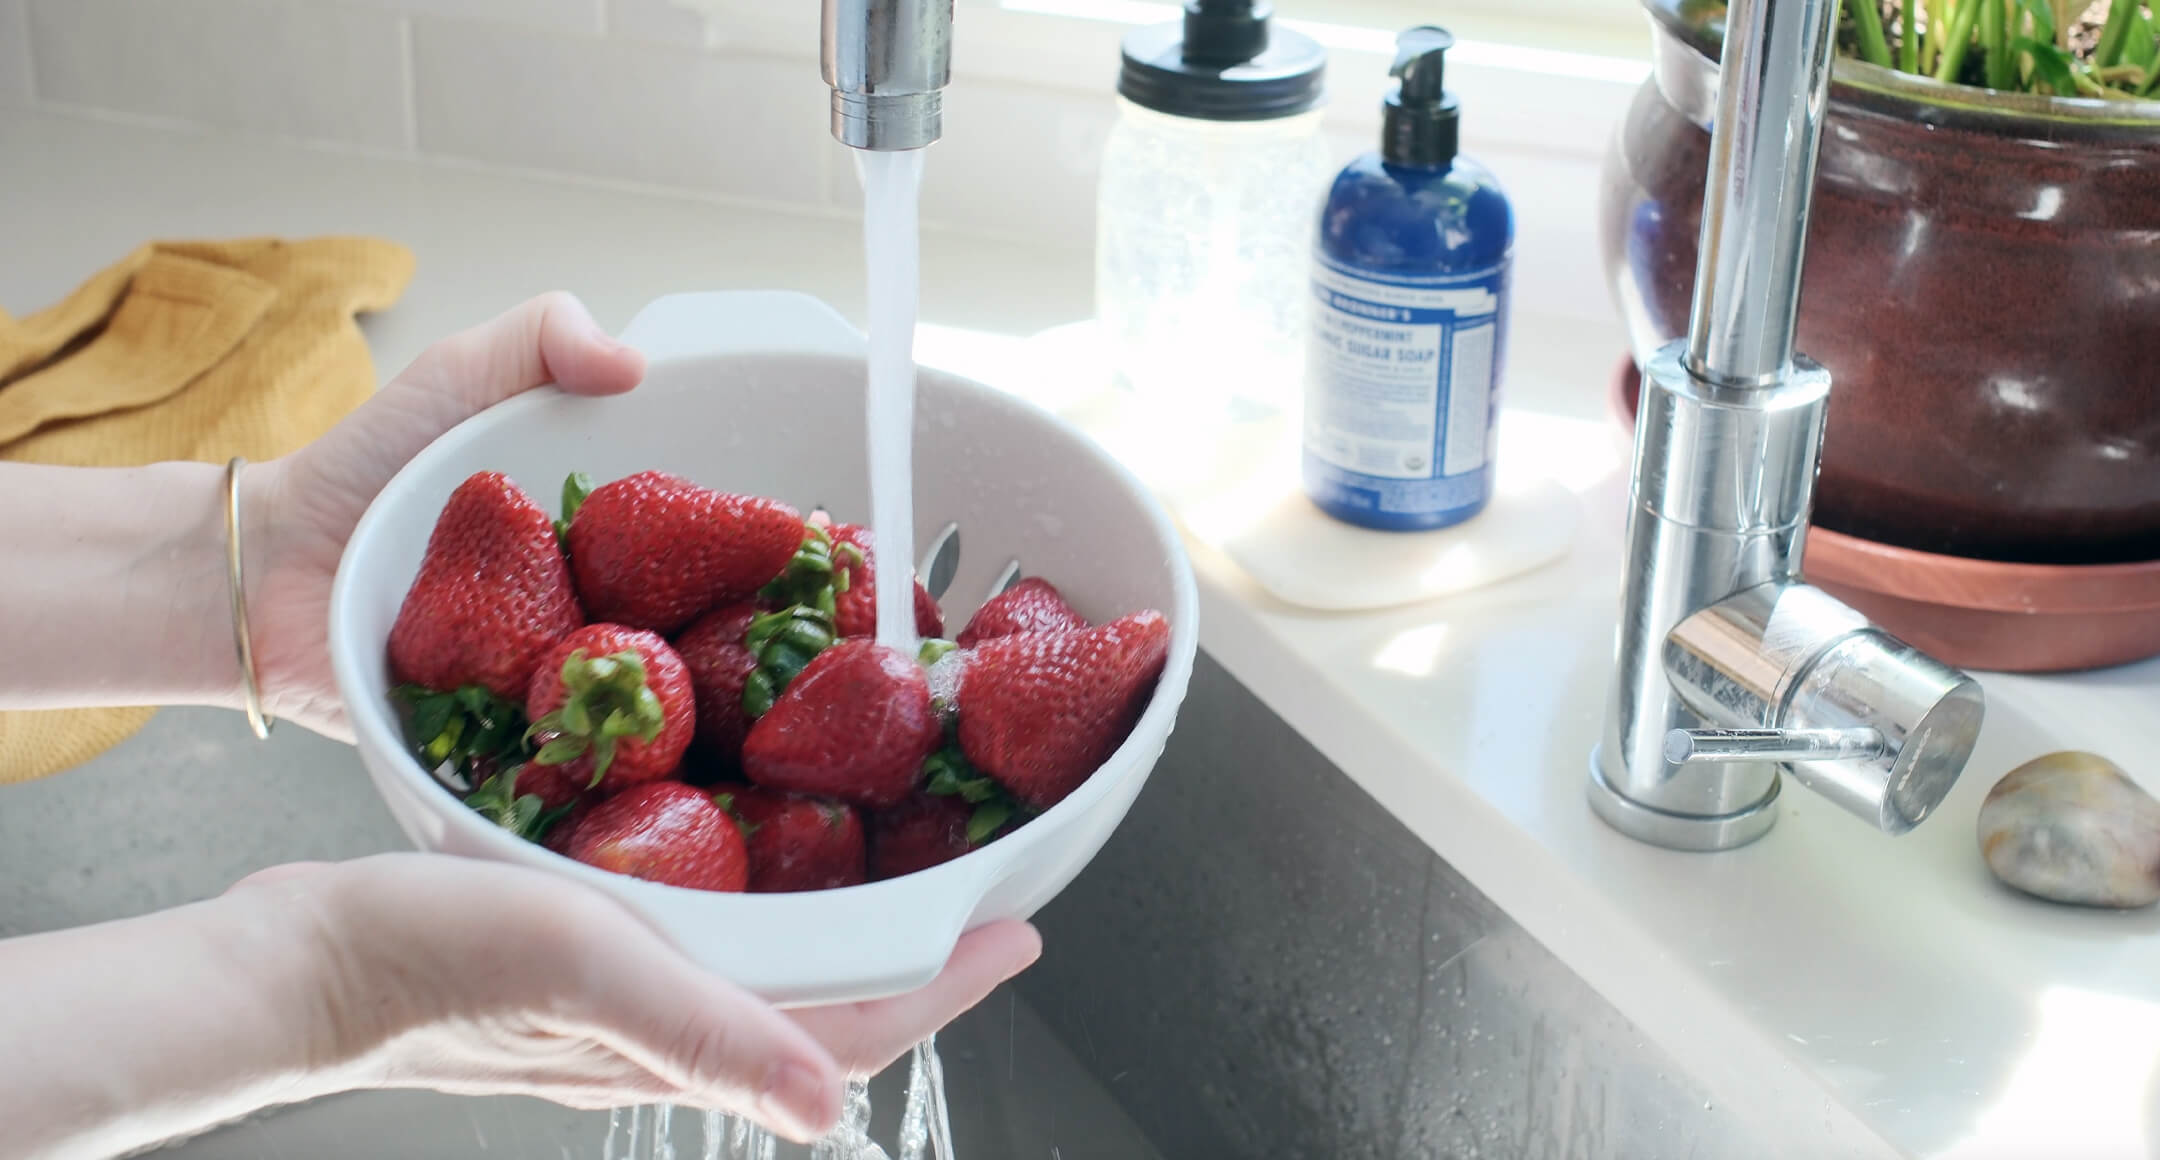 hands holding strawberries in a colander under running water